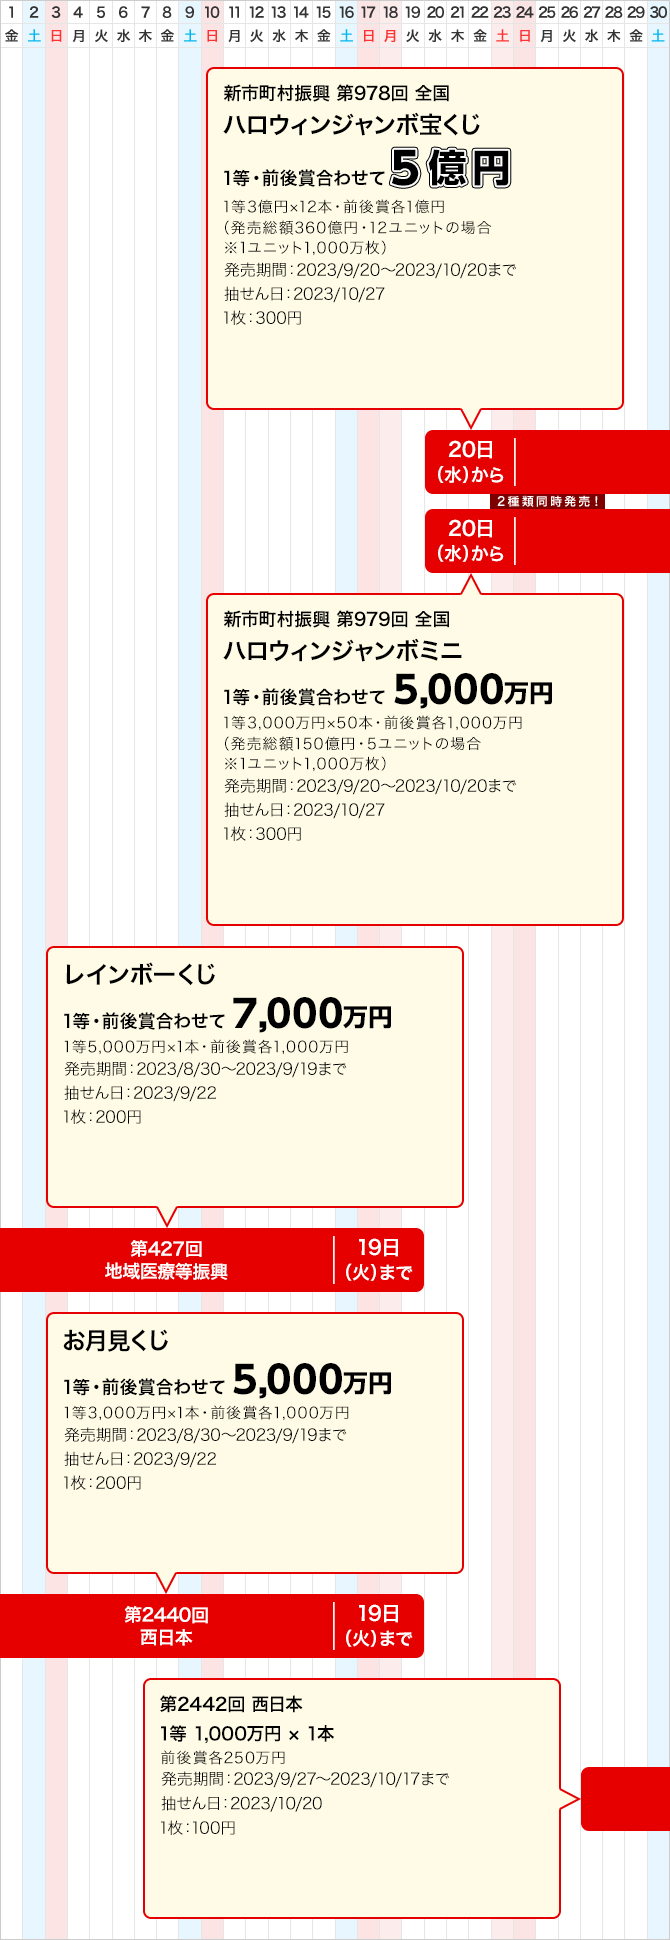 西日本のジャンボ宝くじ等の普通くじ発売スケジュール(9月)